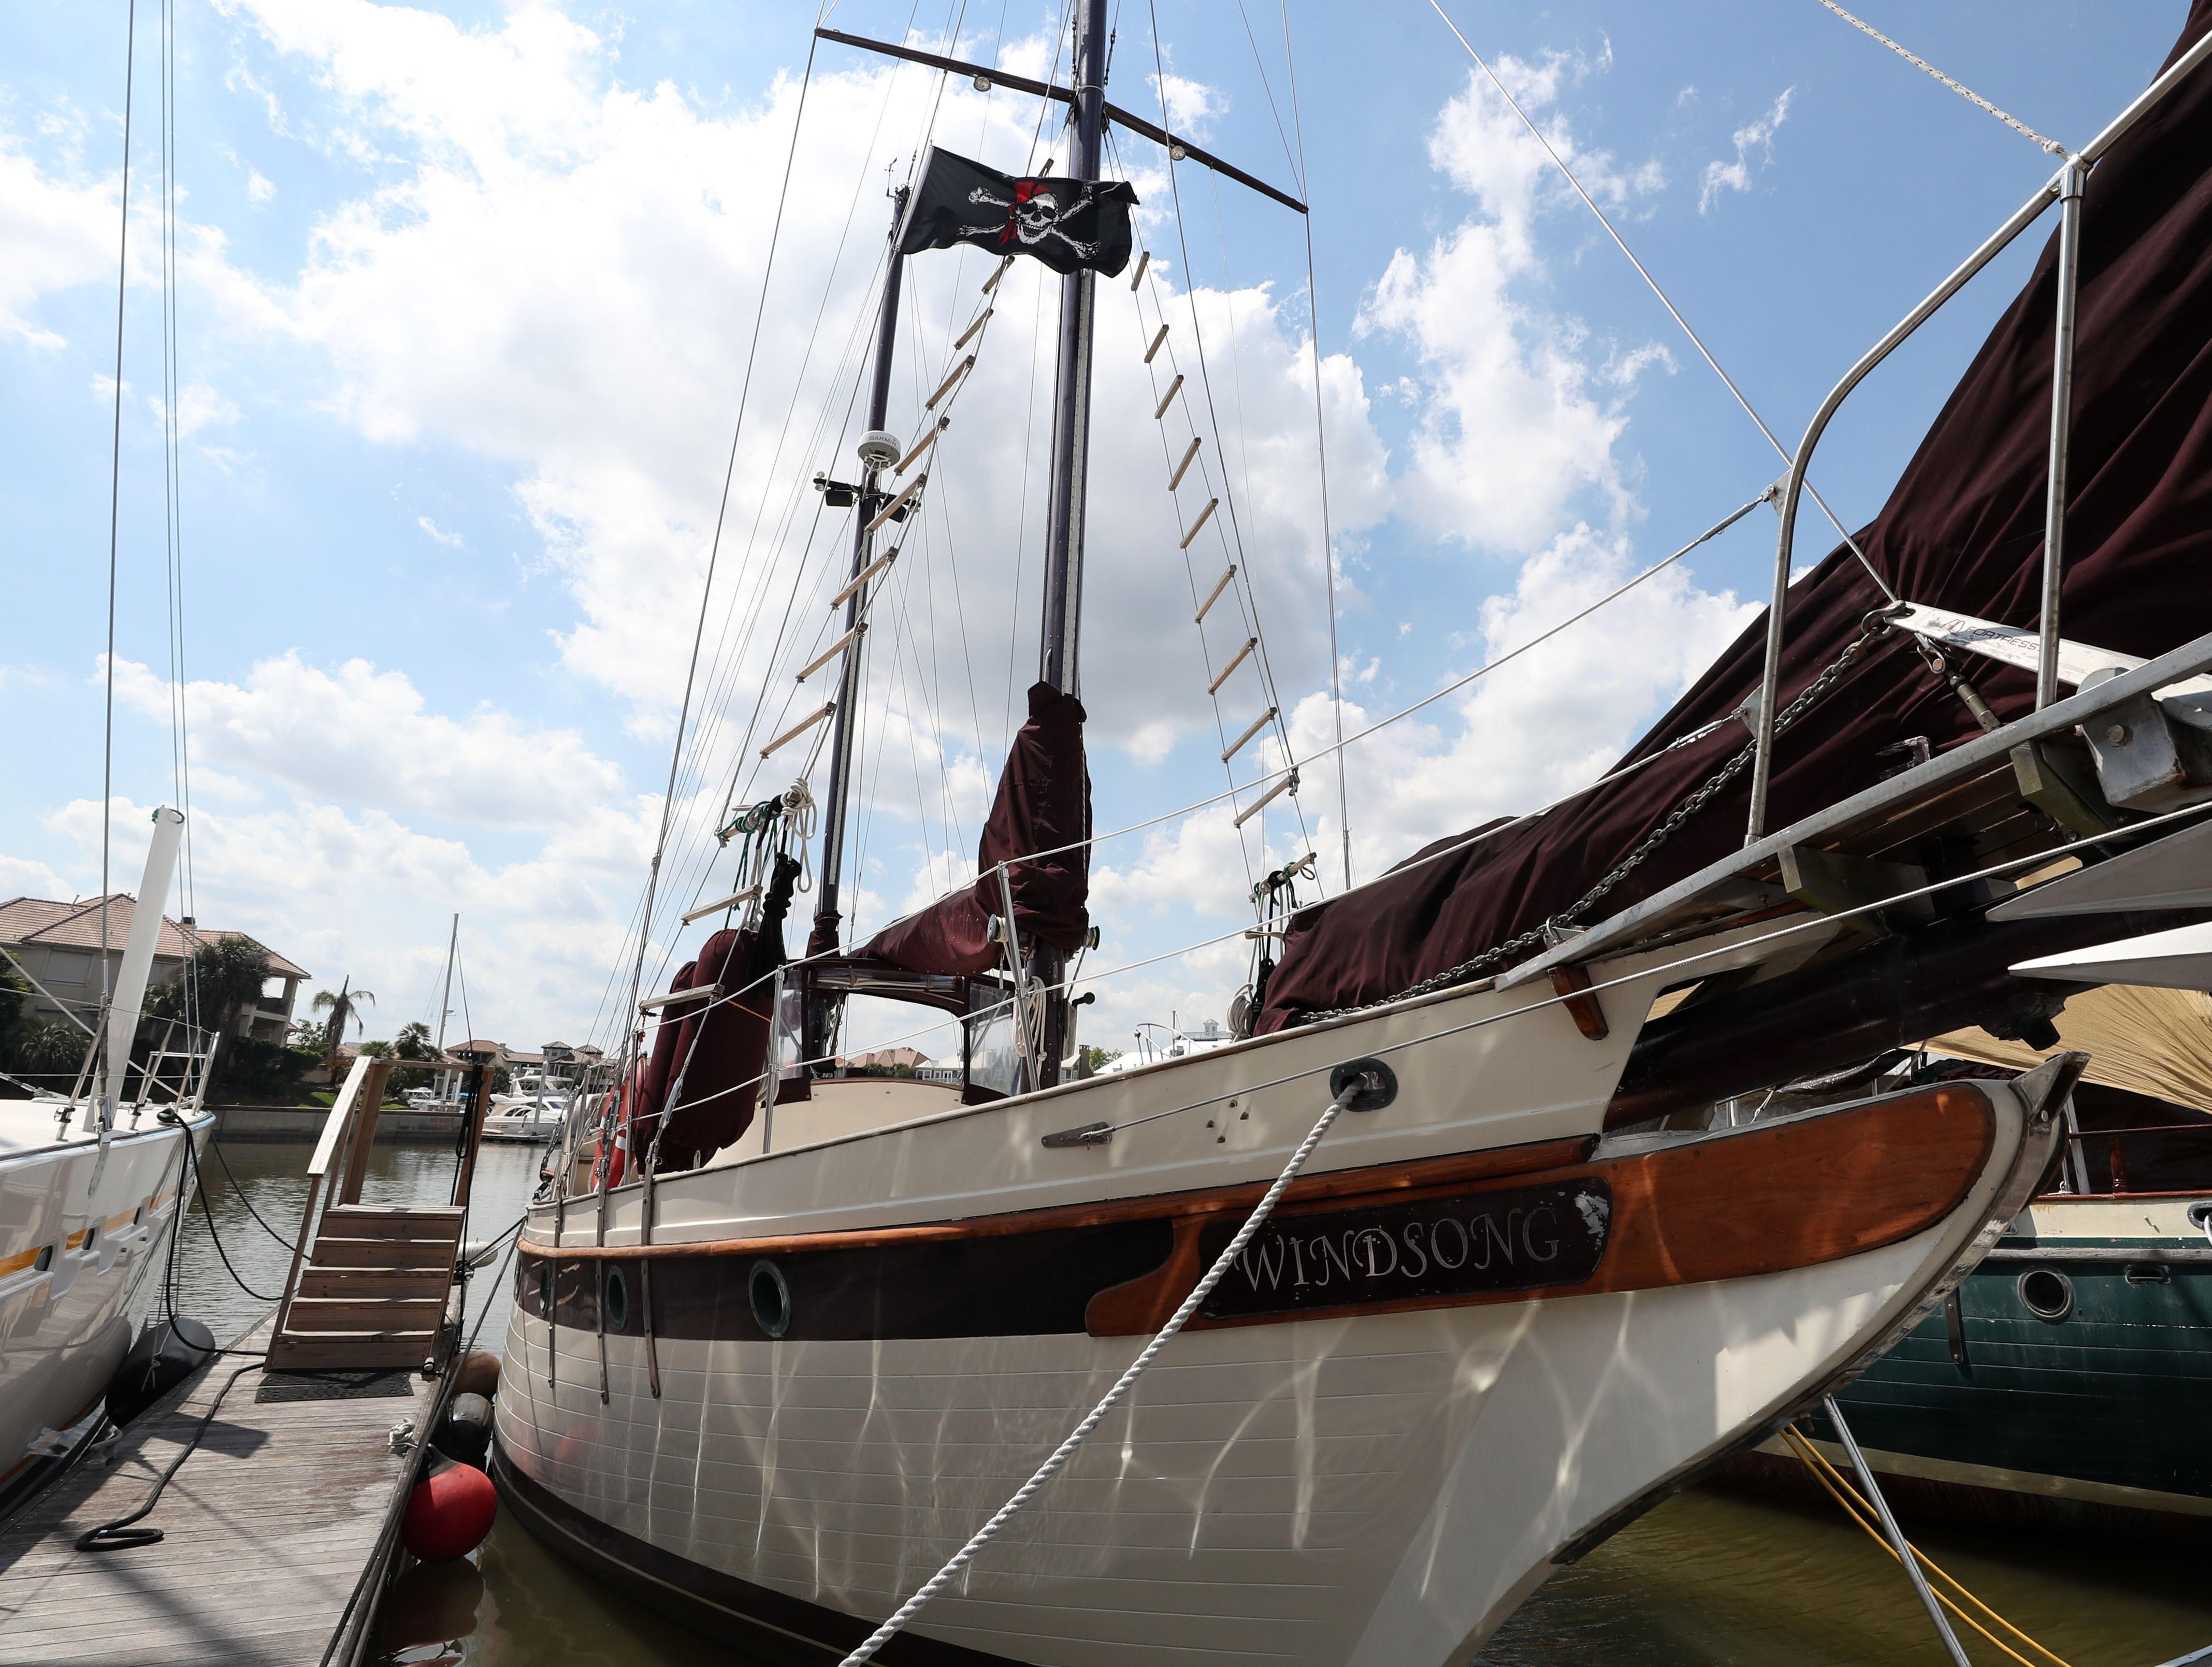 51 foot sailboat